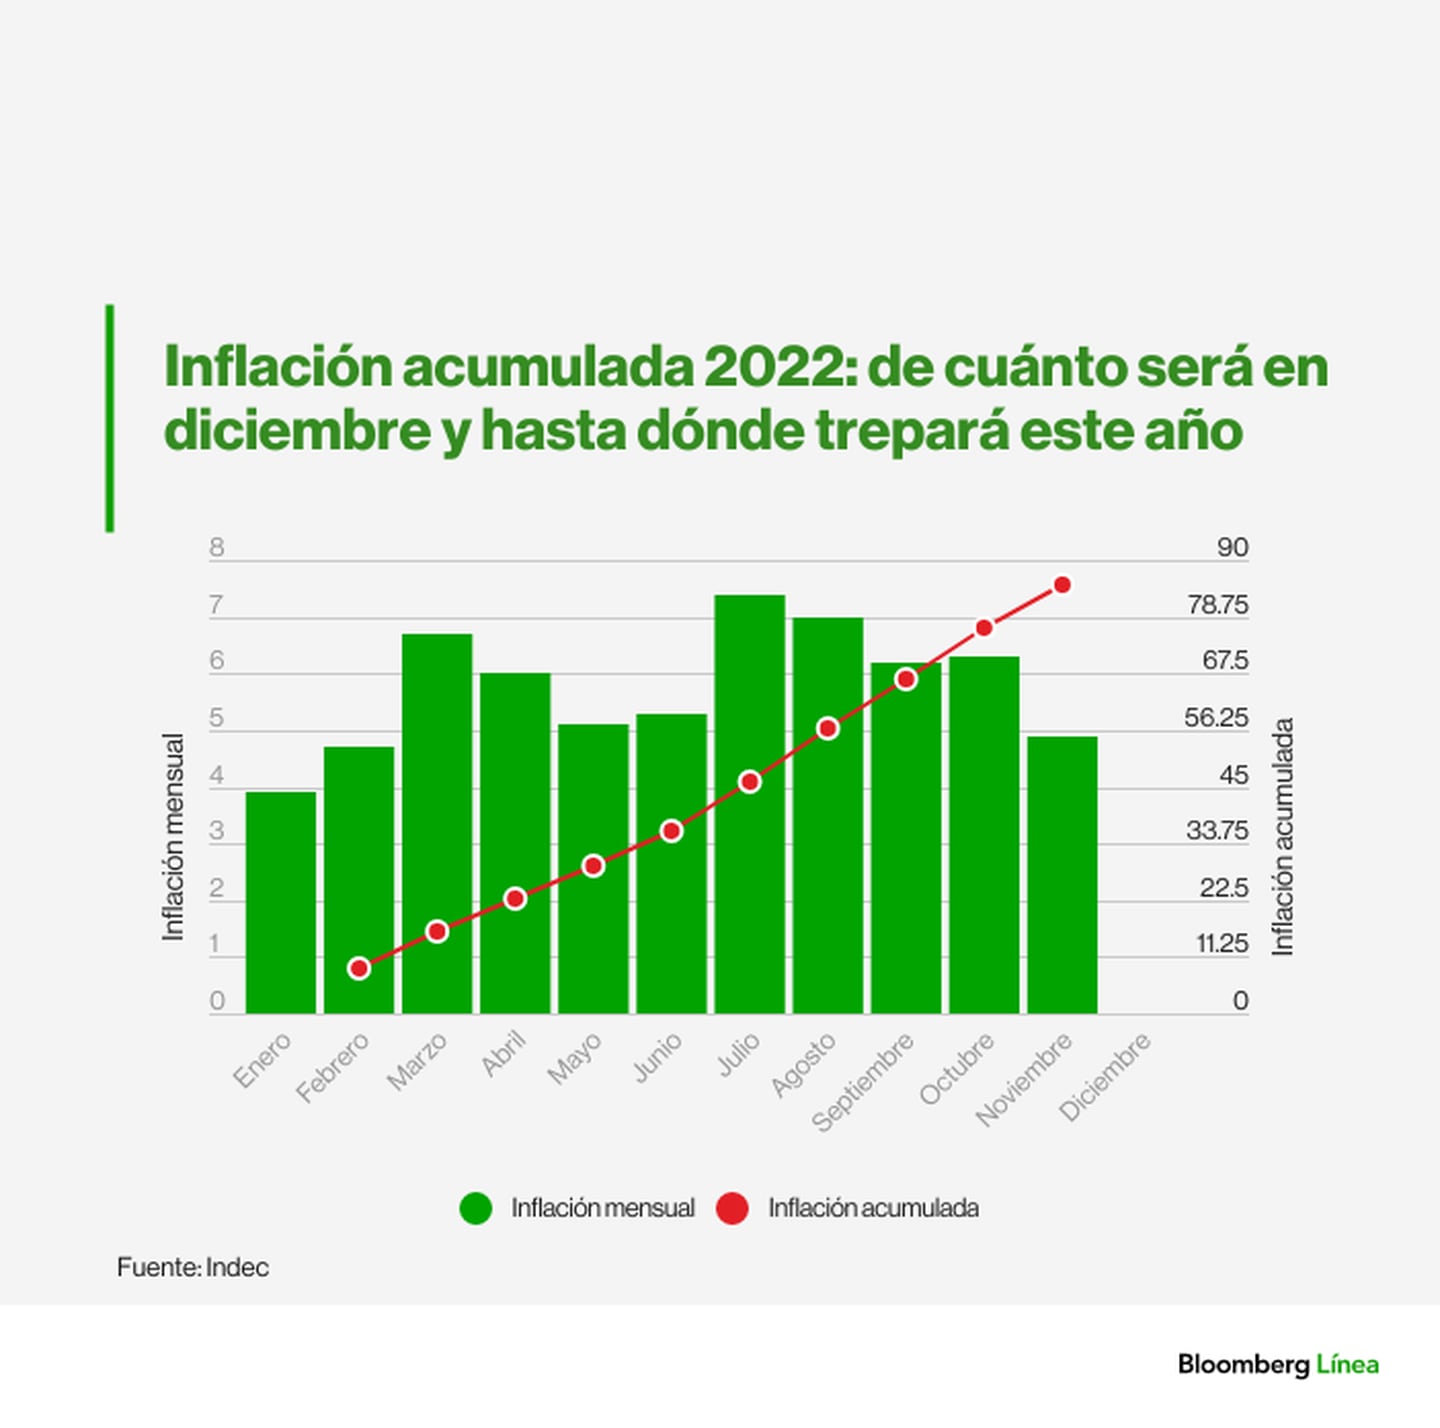 Inflación acumulada en Argentina 2022dfd